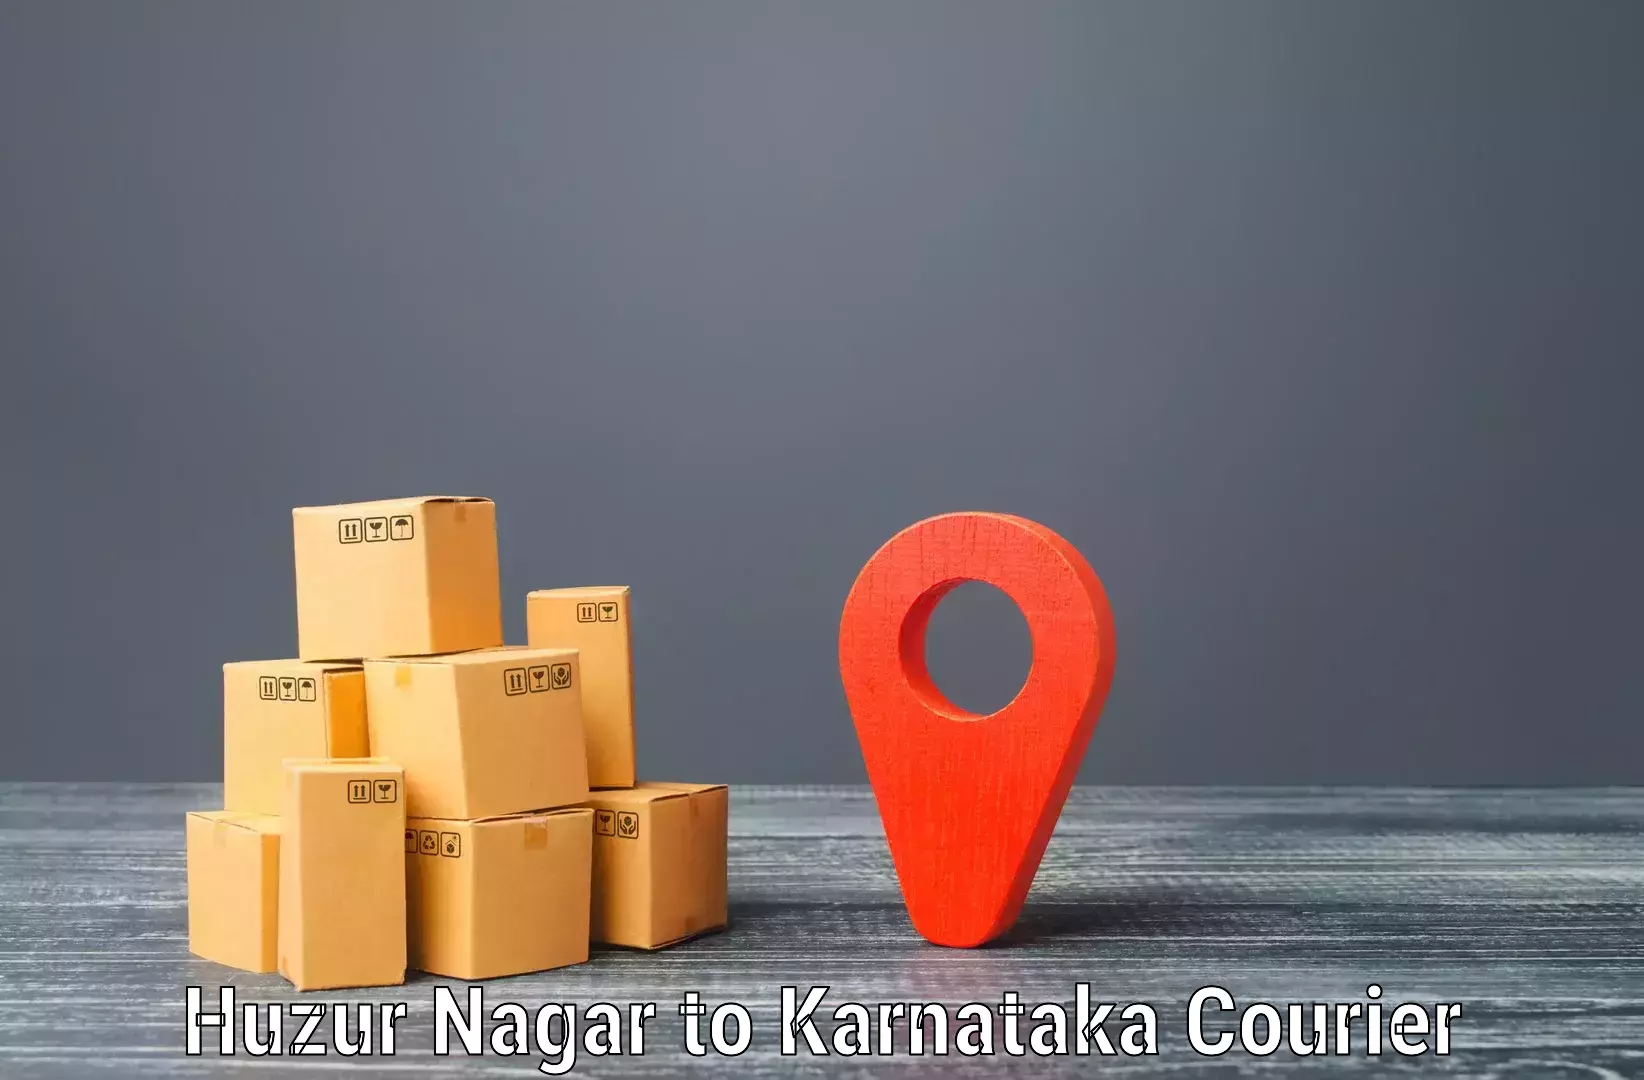 Rural area delivery in Huzur Nagar to Kodagu